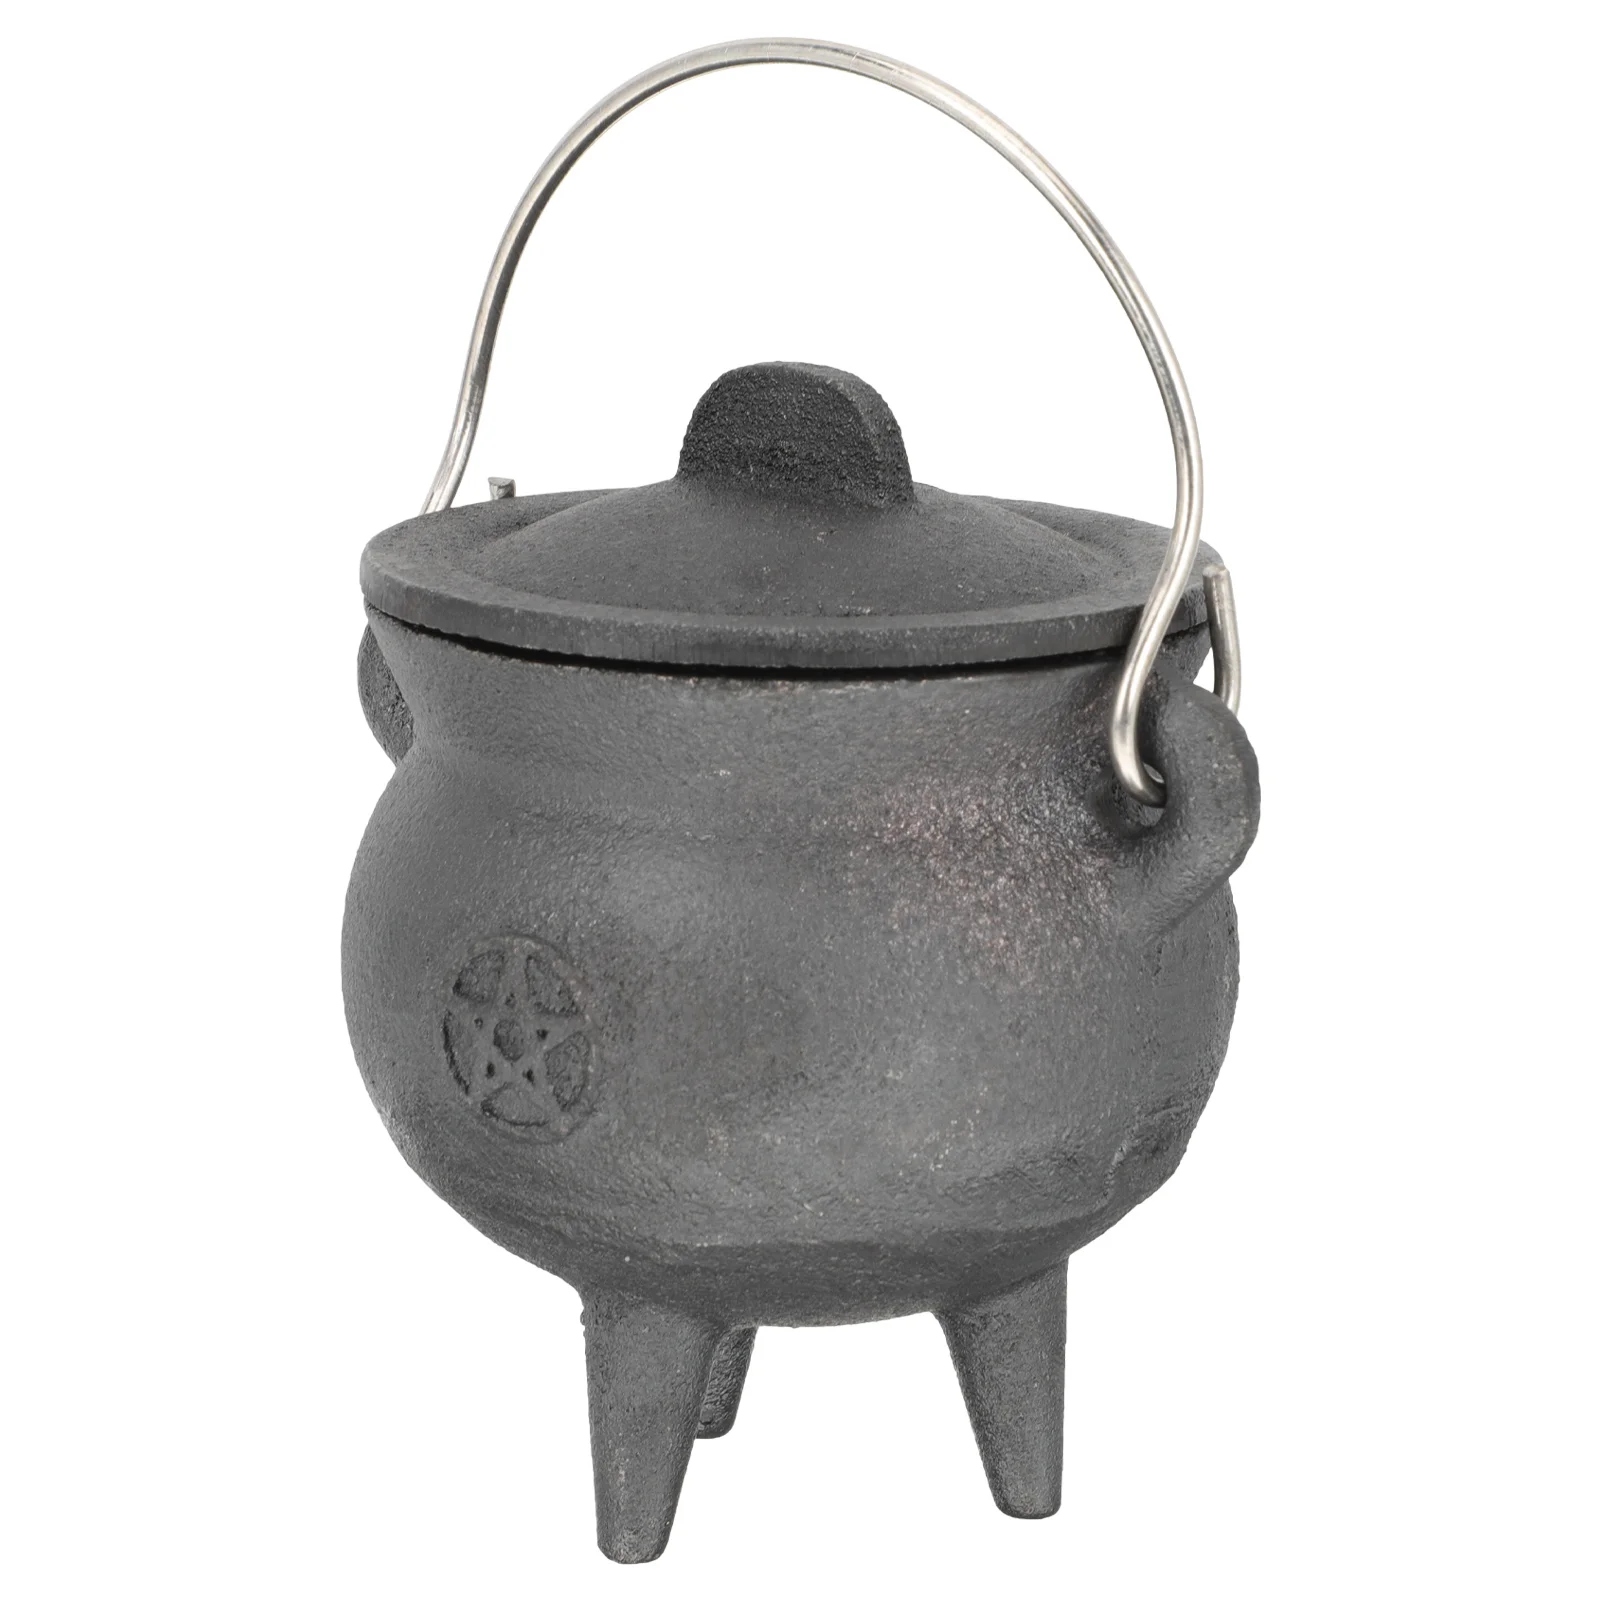 

Witch's Cauldron Toy Offering Pot Desktop Ornament Statue Metal Handicraft Iron Sacrificial Decor